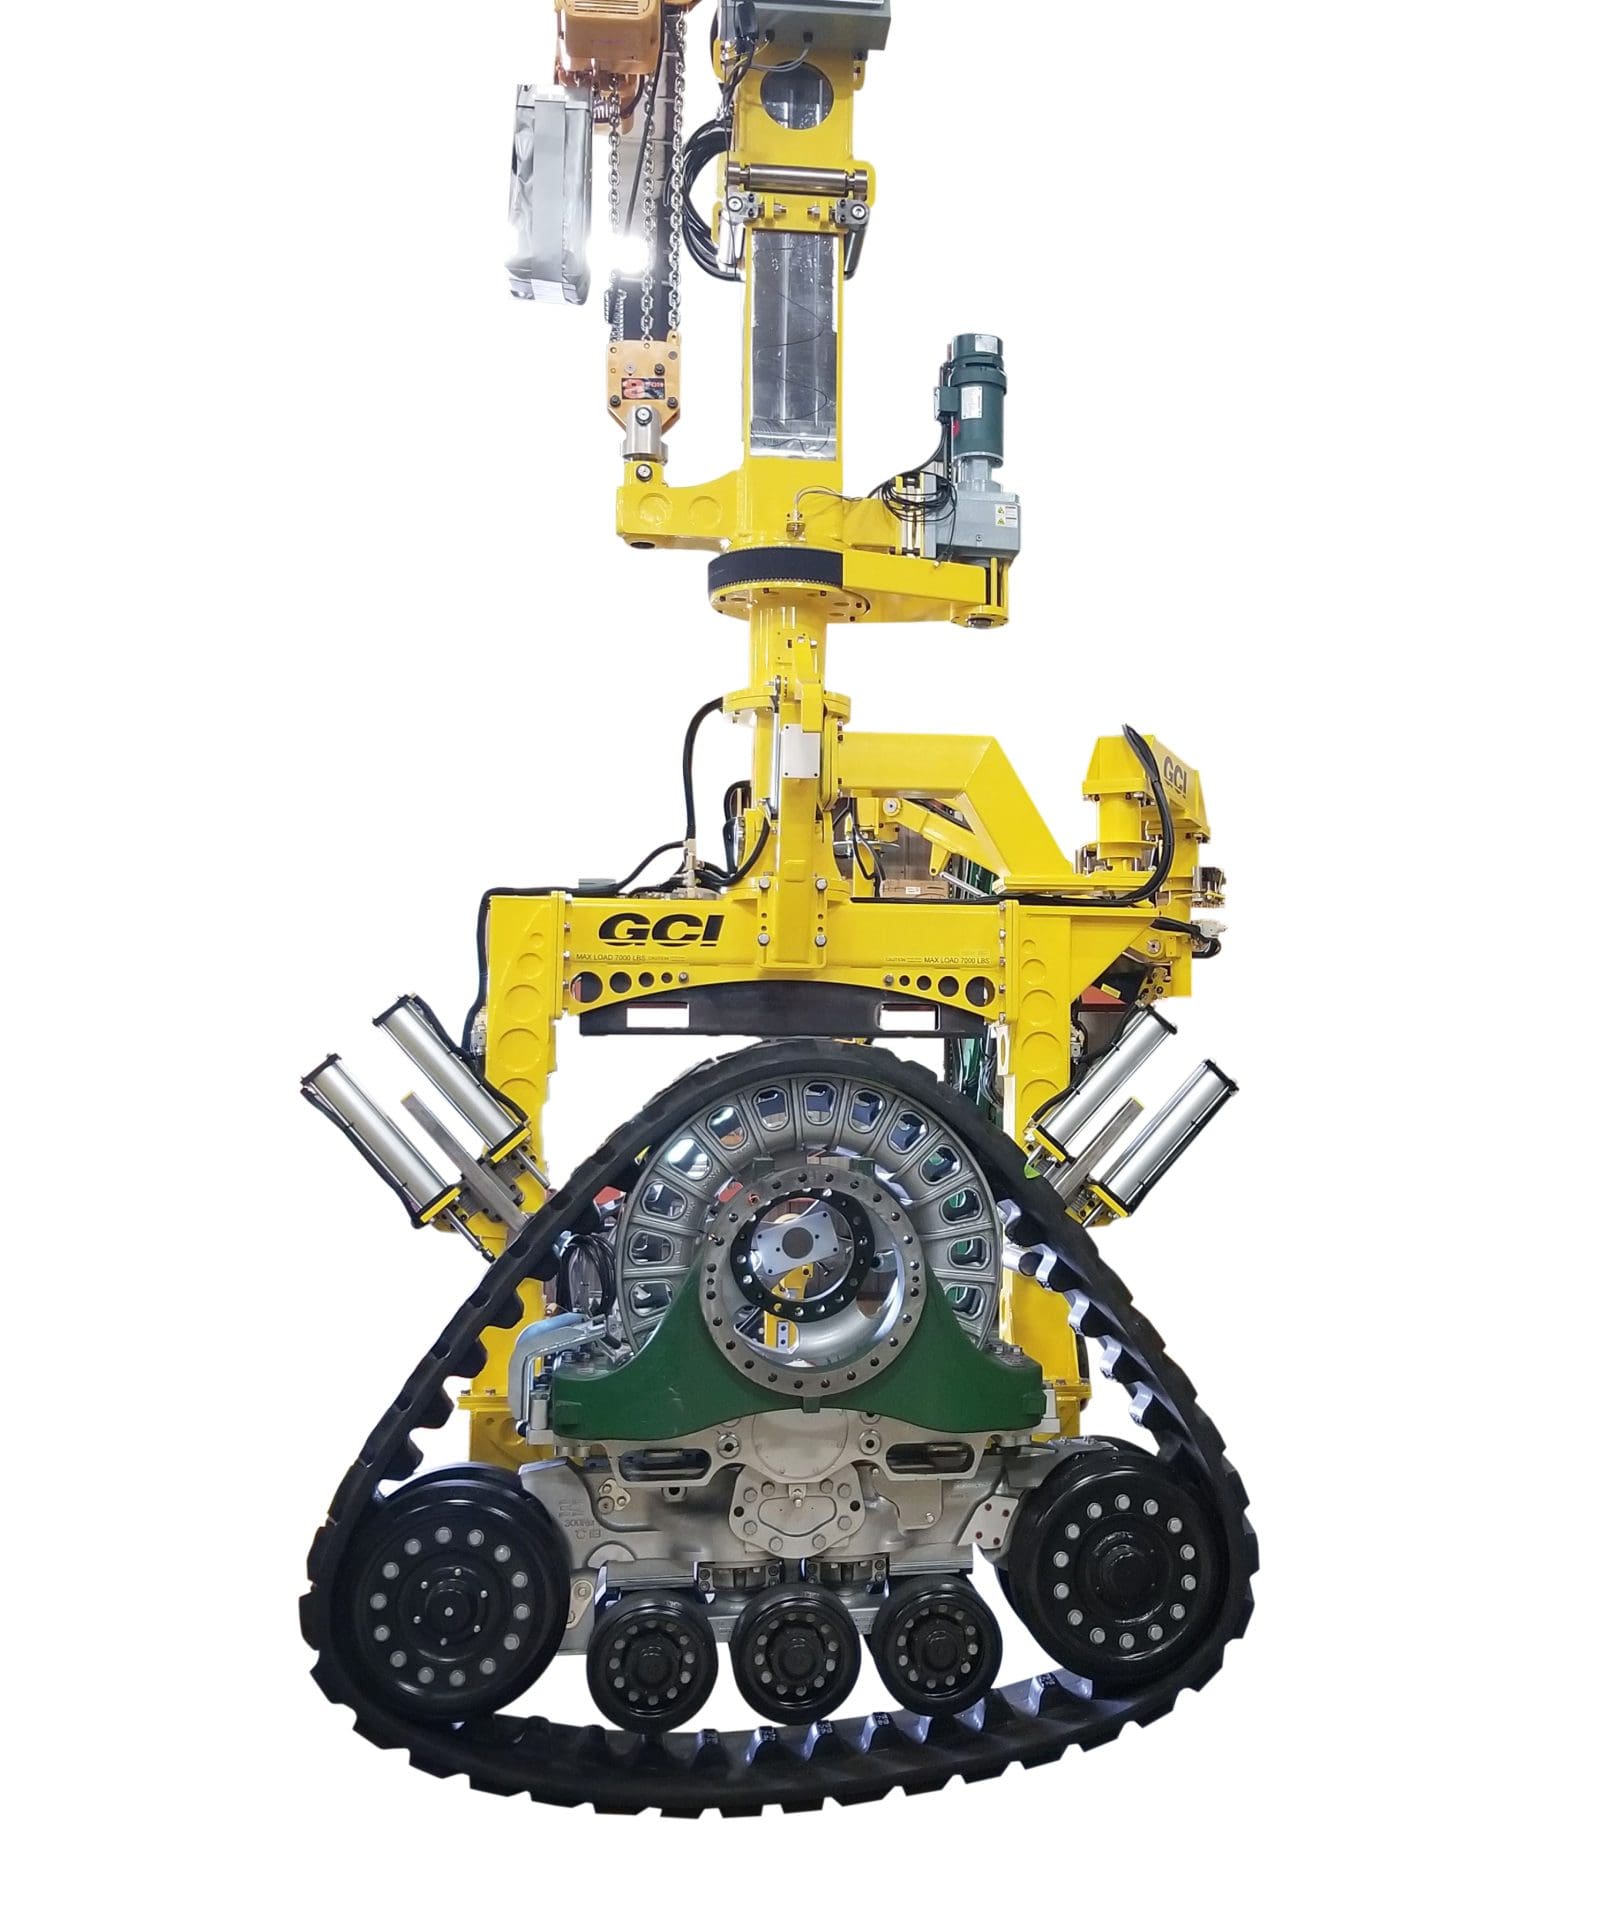 Image of a GCI manipulator lifting a massive 7,000 lb tractor track.